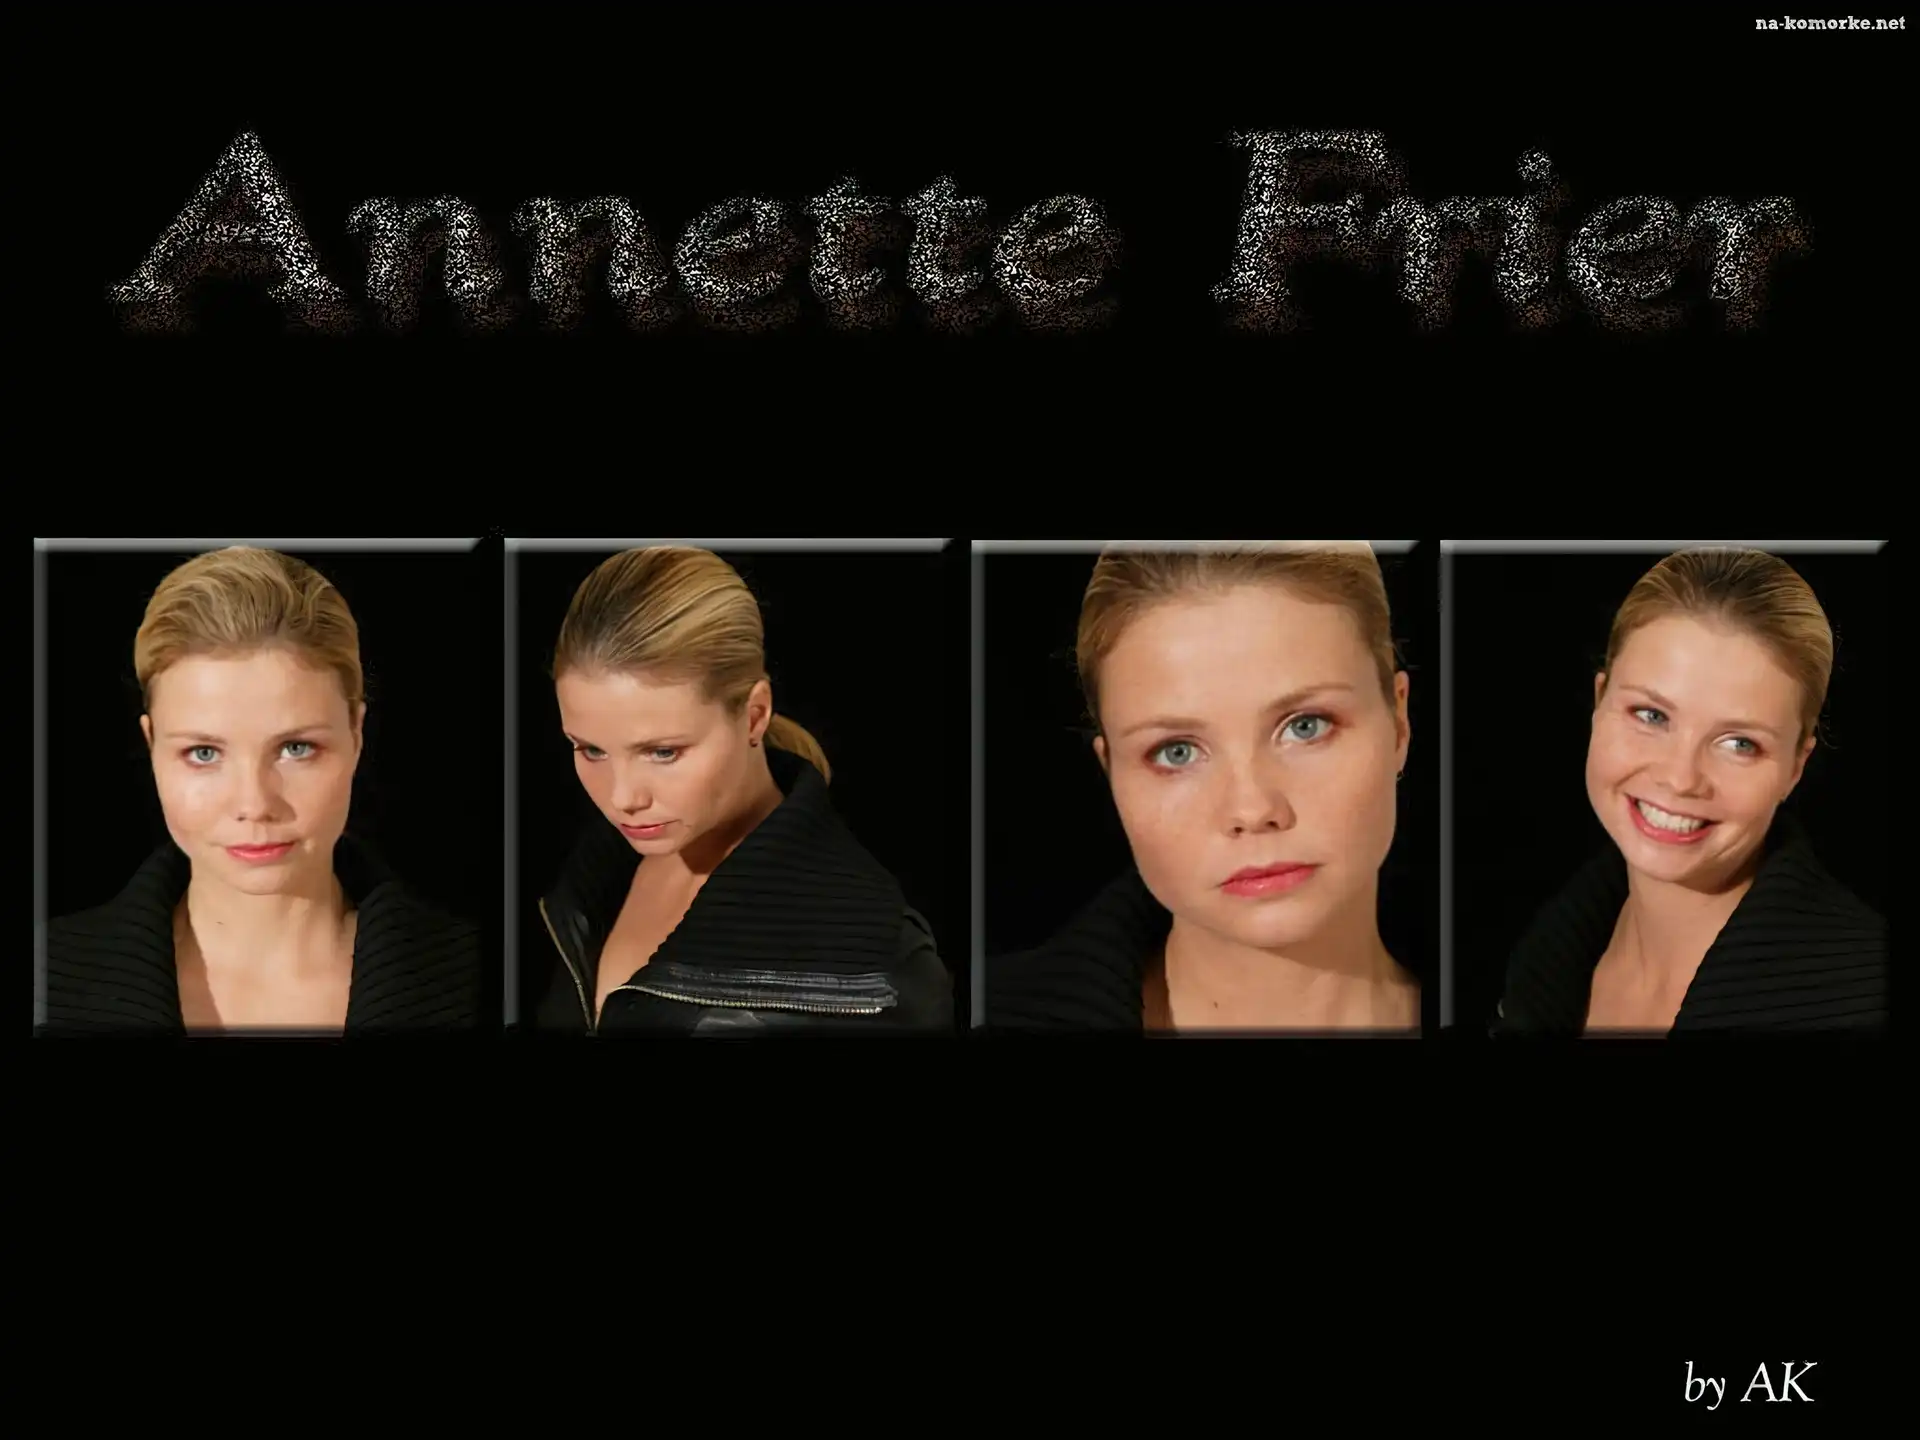 Annette Frier